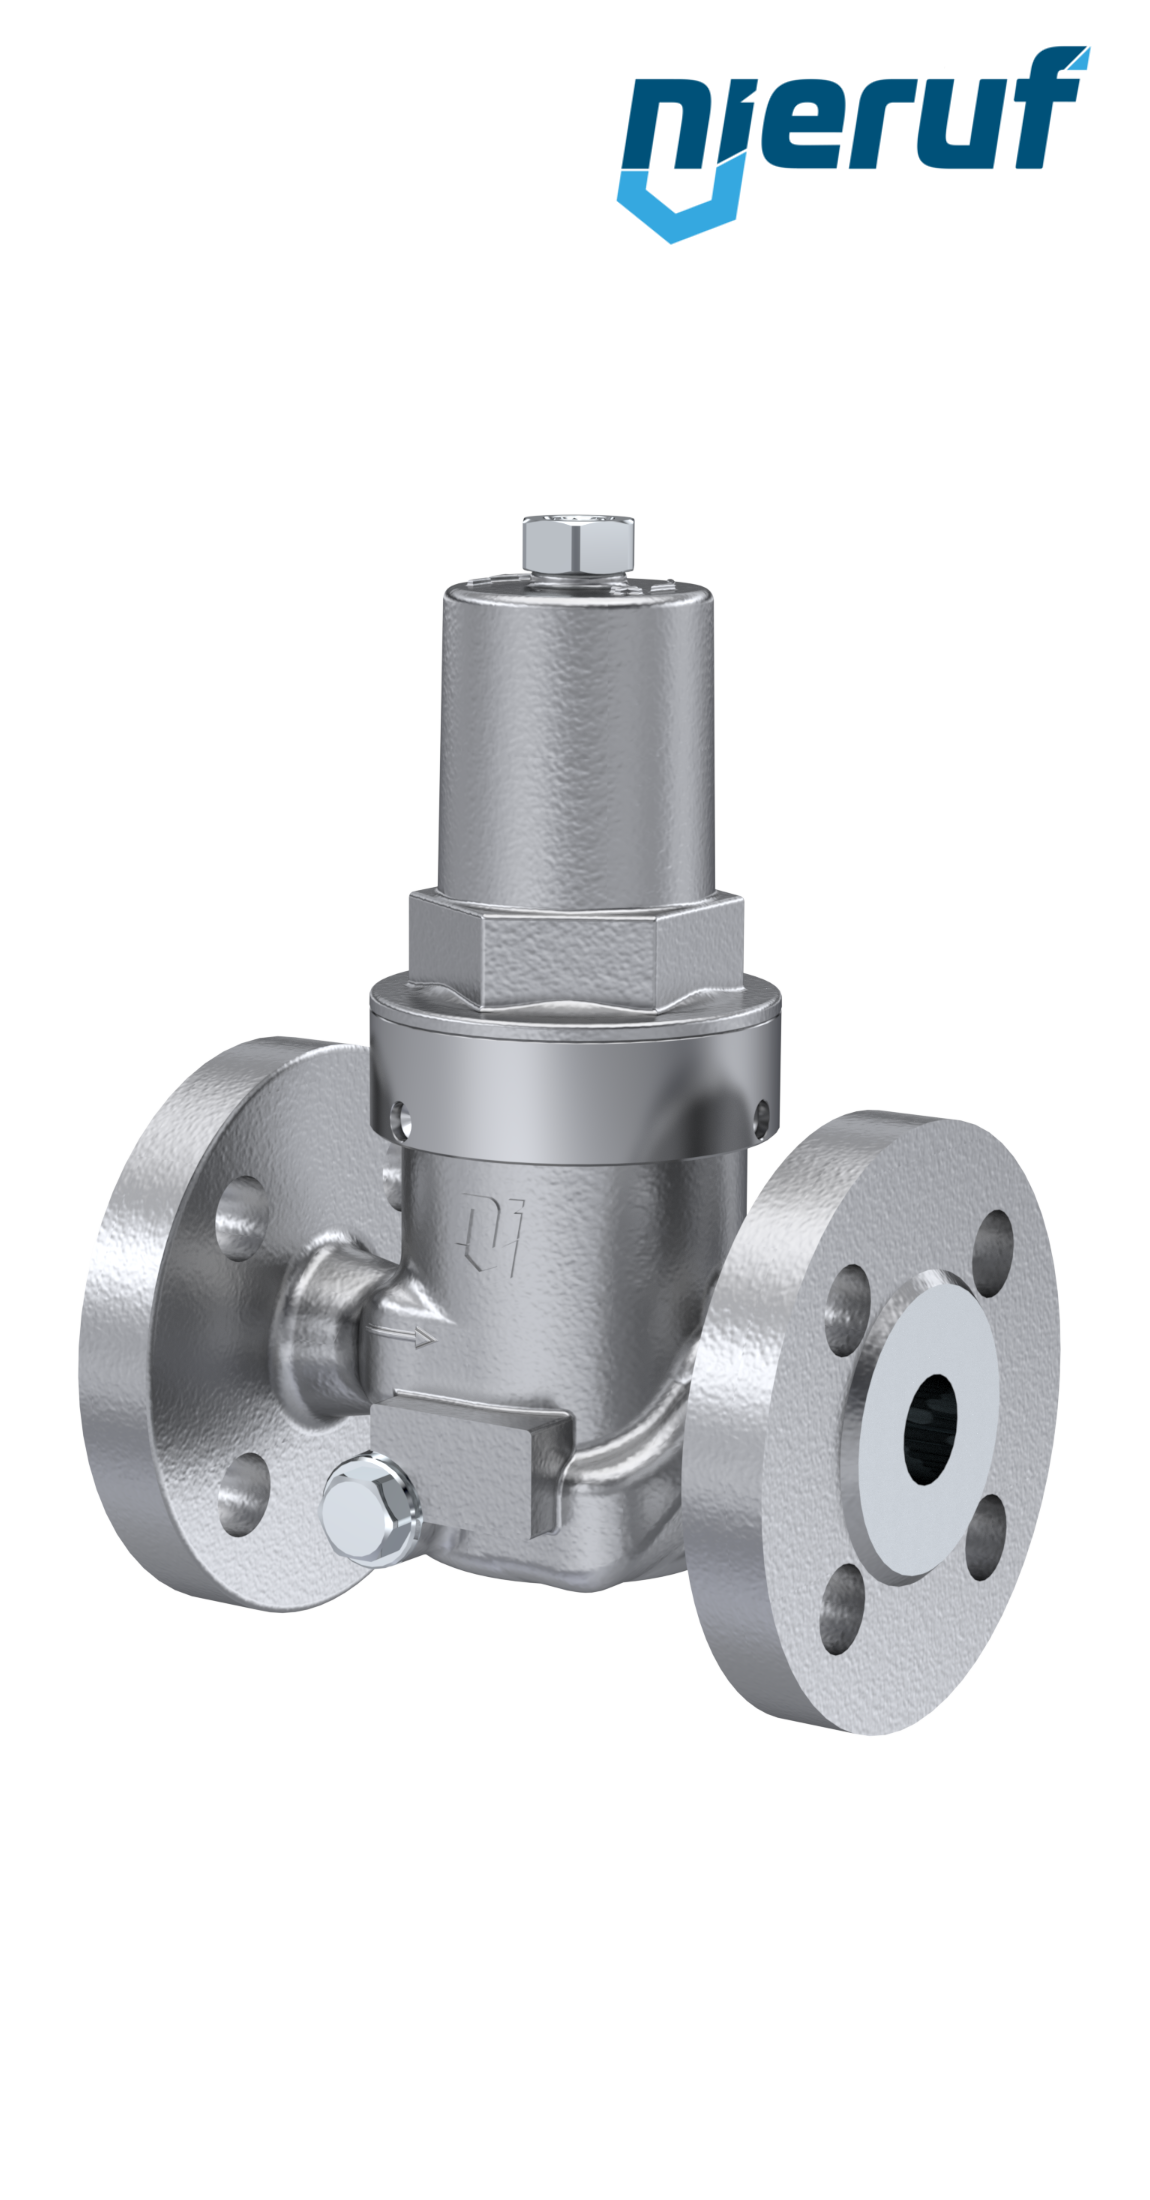 pressure reducing valve DN 15 DM13 stainless steel FPM / FKM 0.2 - 2.0 bar